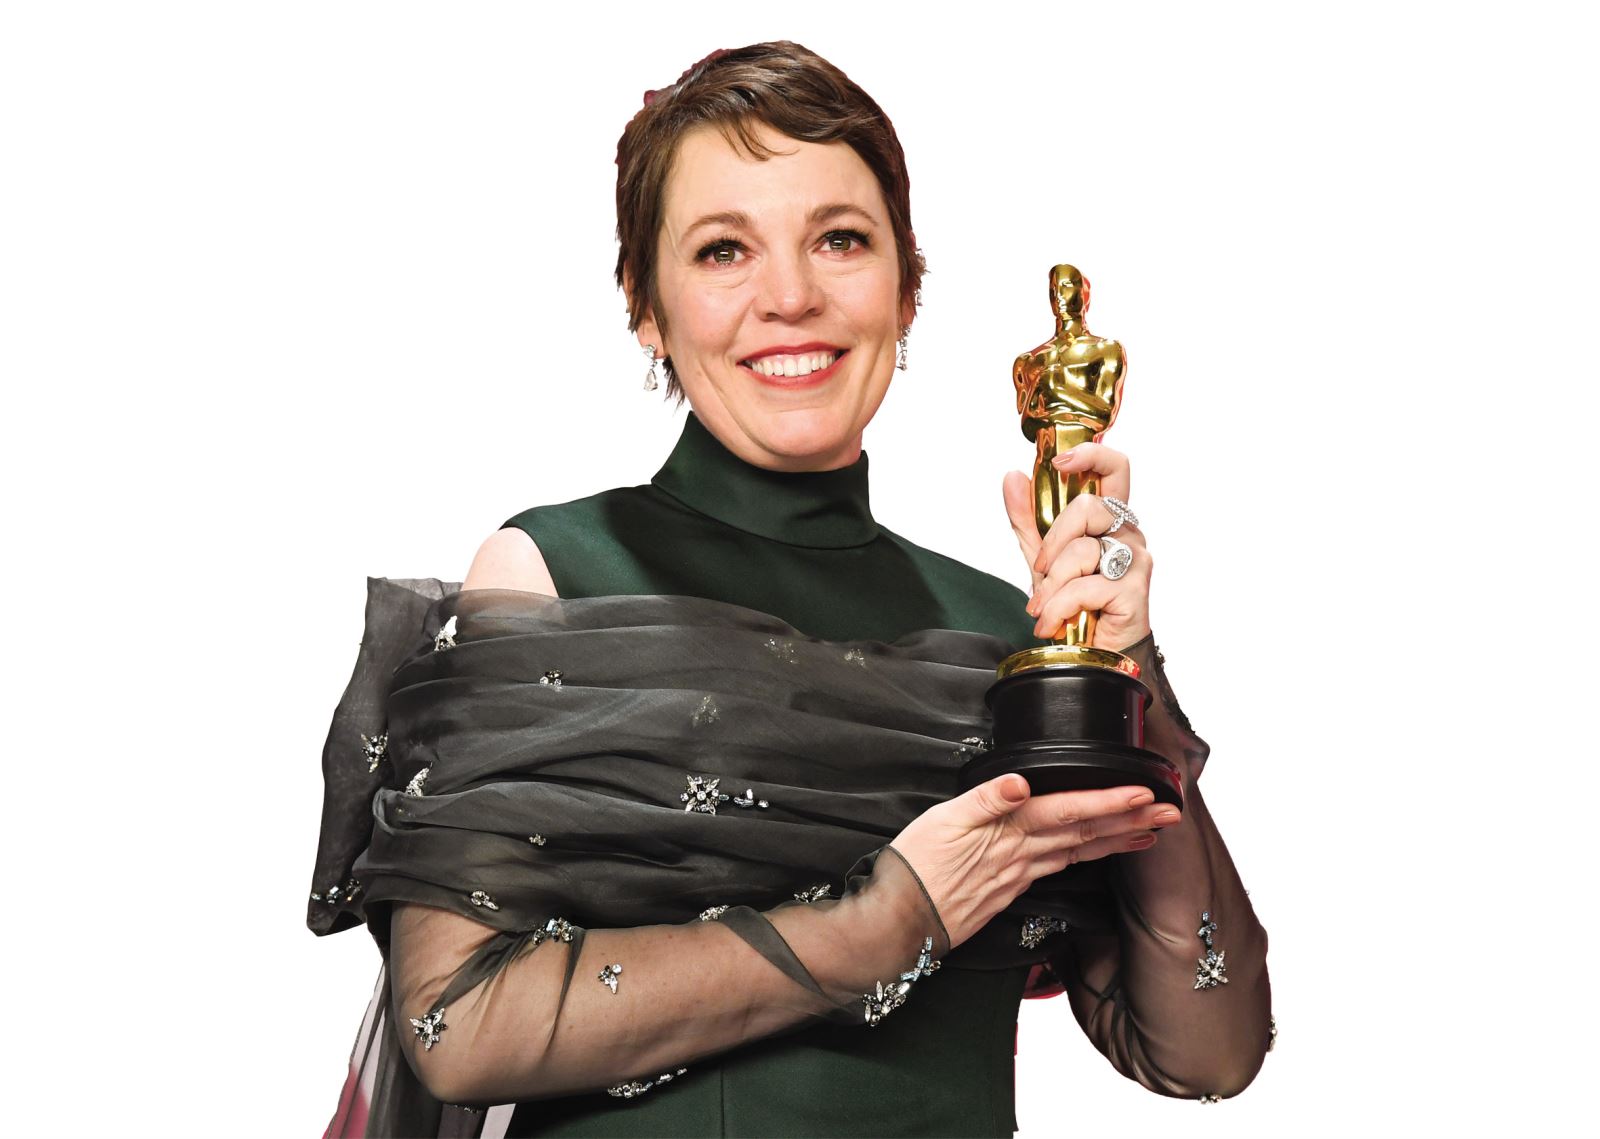 Với vai nữ hoàng Anne trong phim The Favourite (Sủng phi), Olivia Colman đã đánh bại nhiều đối thủ nặng kí để đoạt tượng vàng oscar ngay trong lần đầu đề cử.

